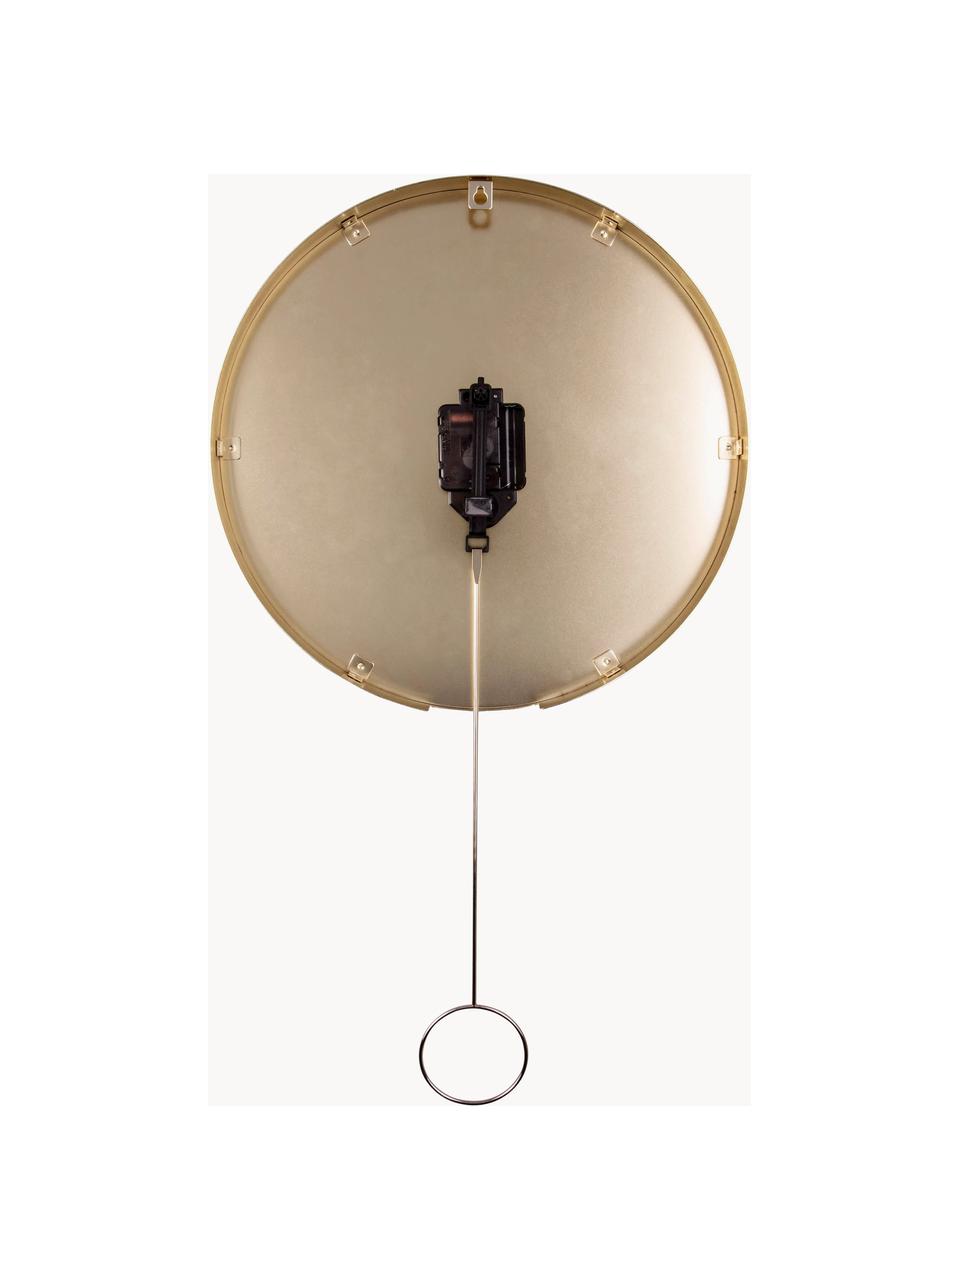 Zegar ścienny Pendulum, Metal powlekany, Czarny, odcienie mosiądzu, Ø 34 cm